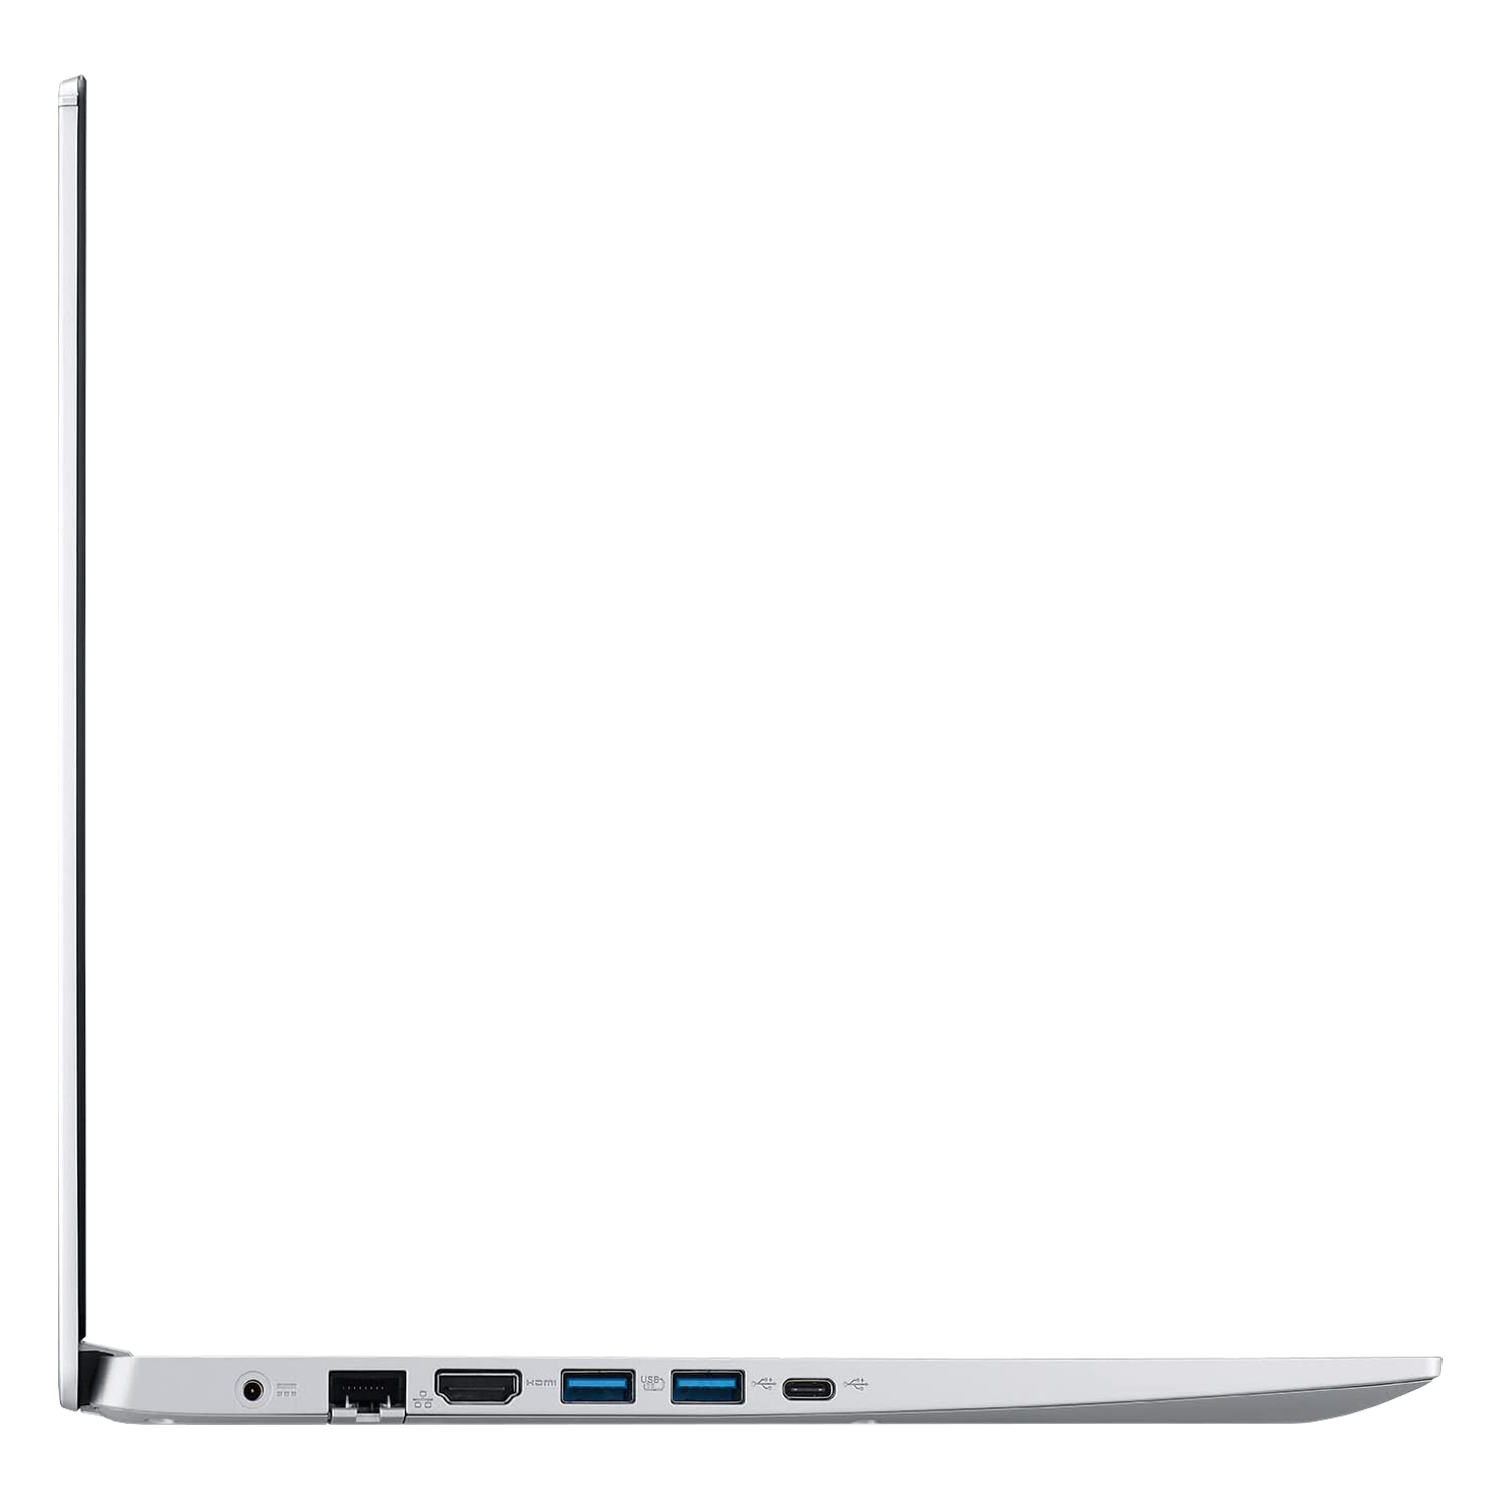 Notebook Acer Aspire 5 A515-45-R74Z 15.6" Ryzen 5-5500U 256GB SSD 8GB RAM - Prata